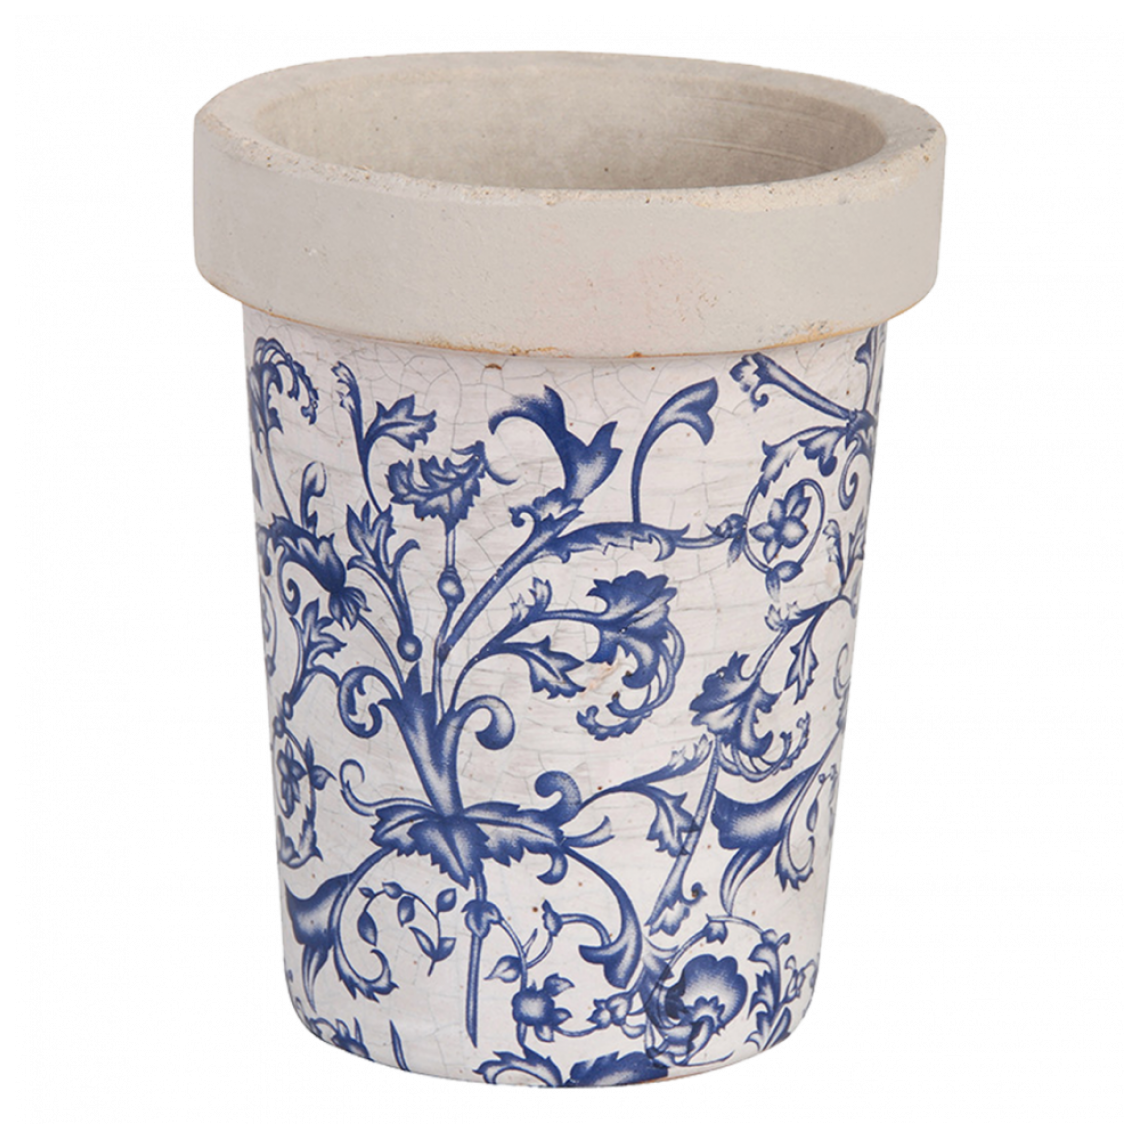 Ac-Deco - Pot de fleur en céramique - 1 L - Bleu et blanc - Poterie, bac à fleurs